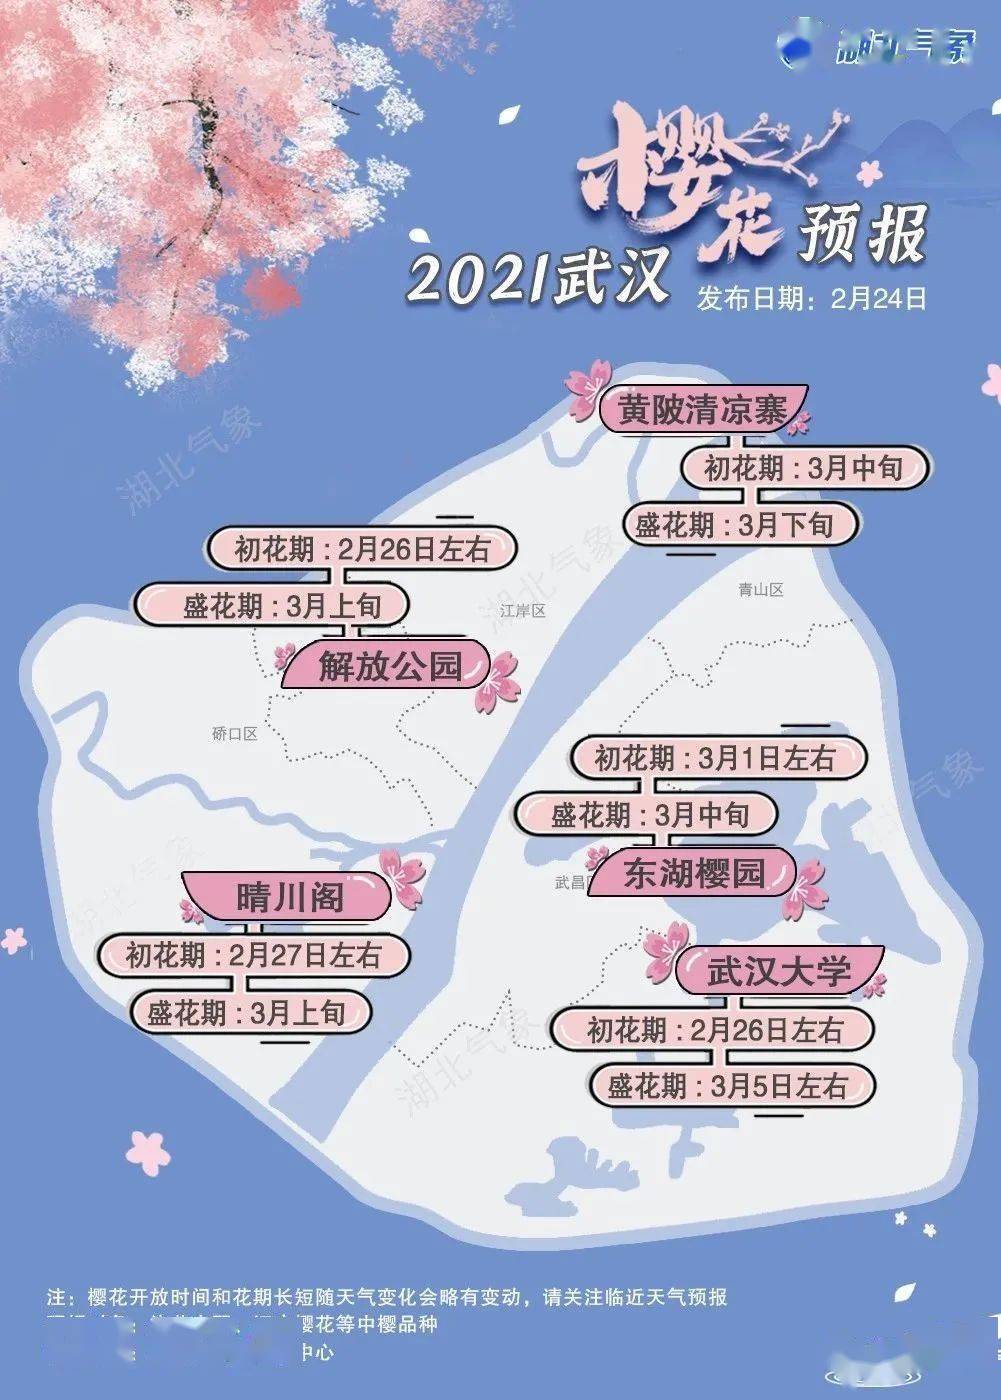 最新樱花预报来了！ 武大樱花将于26日前后开放，花期比往年多出一周